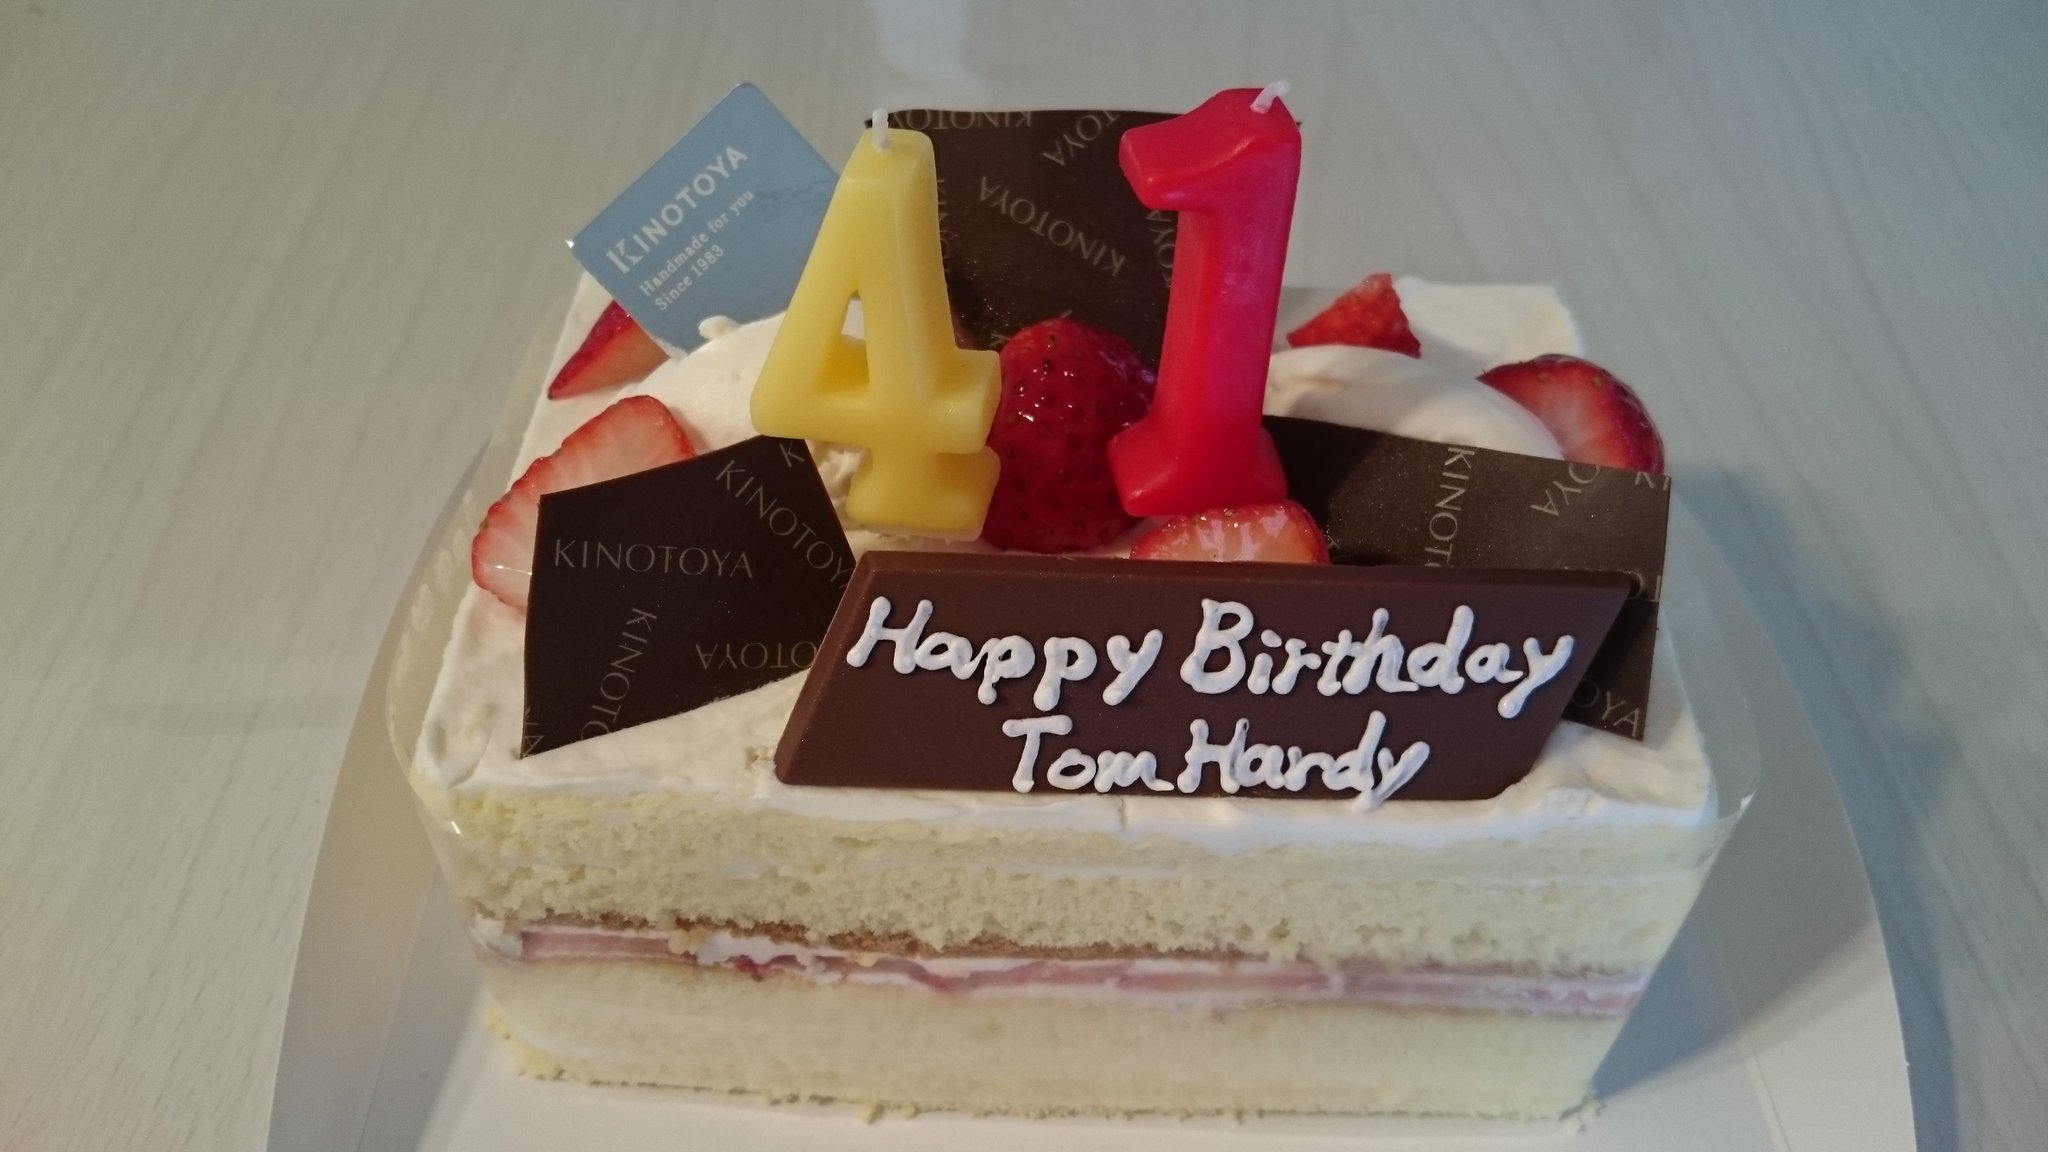 Happy birthday Tom Hardy                                           